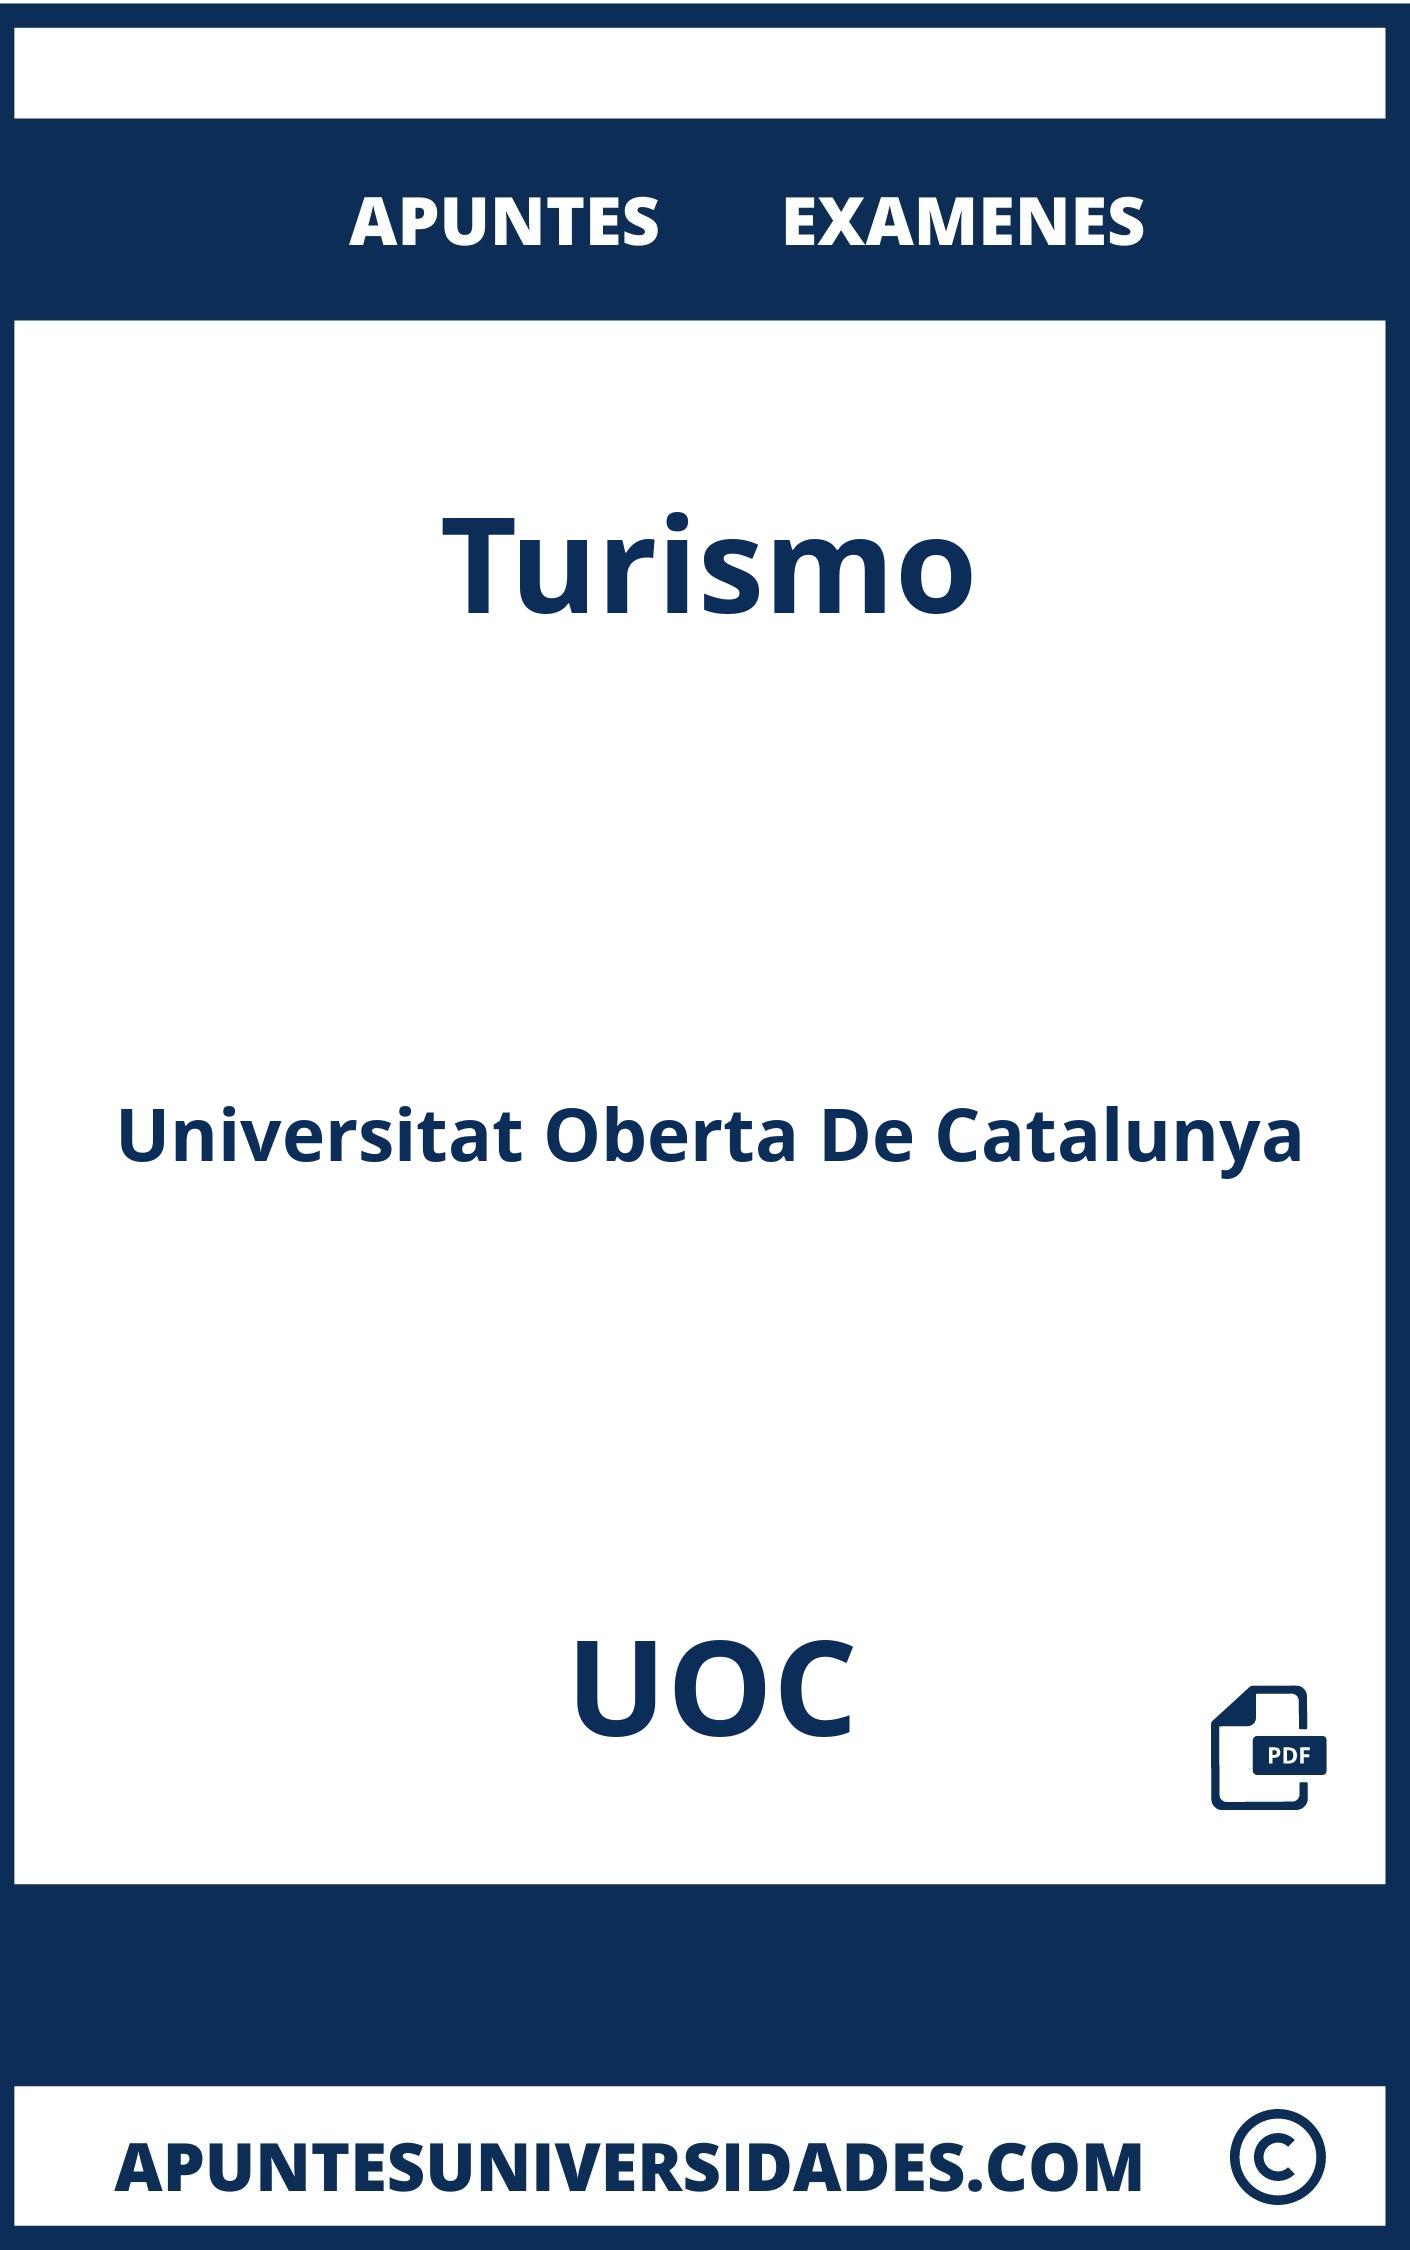 Apuntes y Examenes Turismo UOC